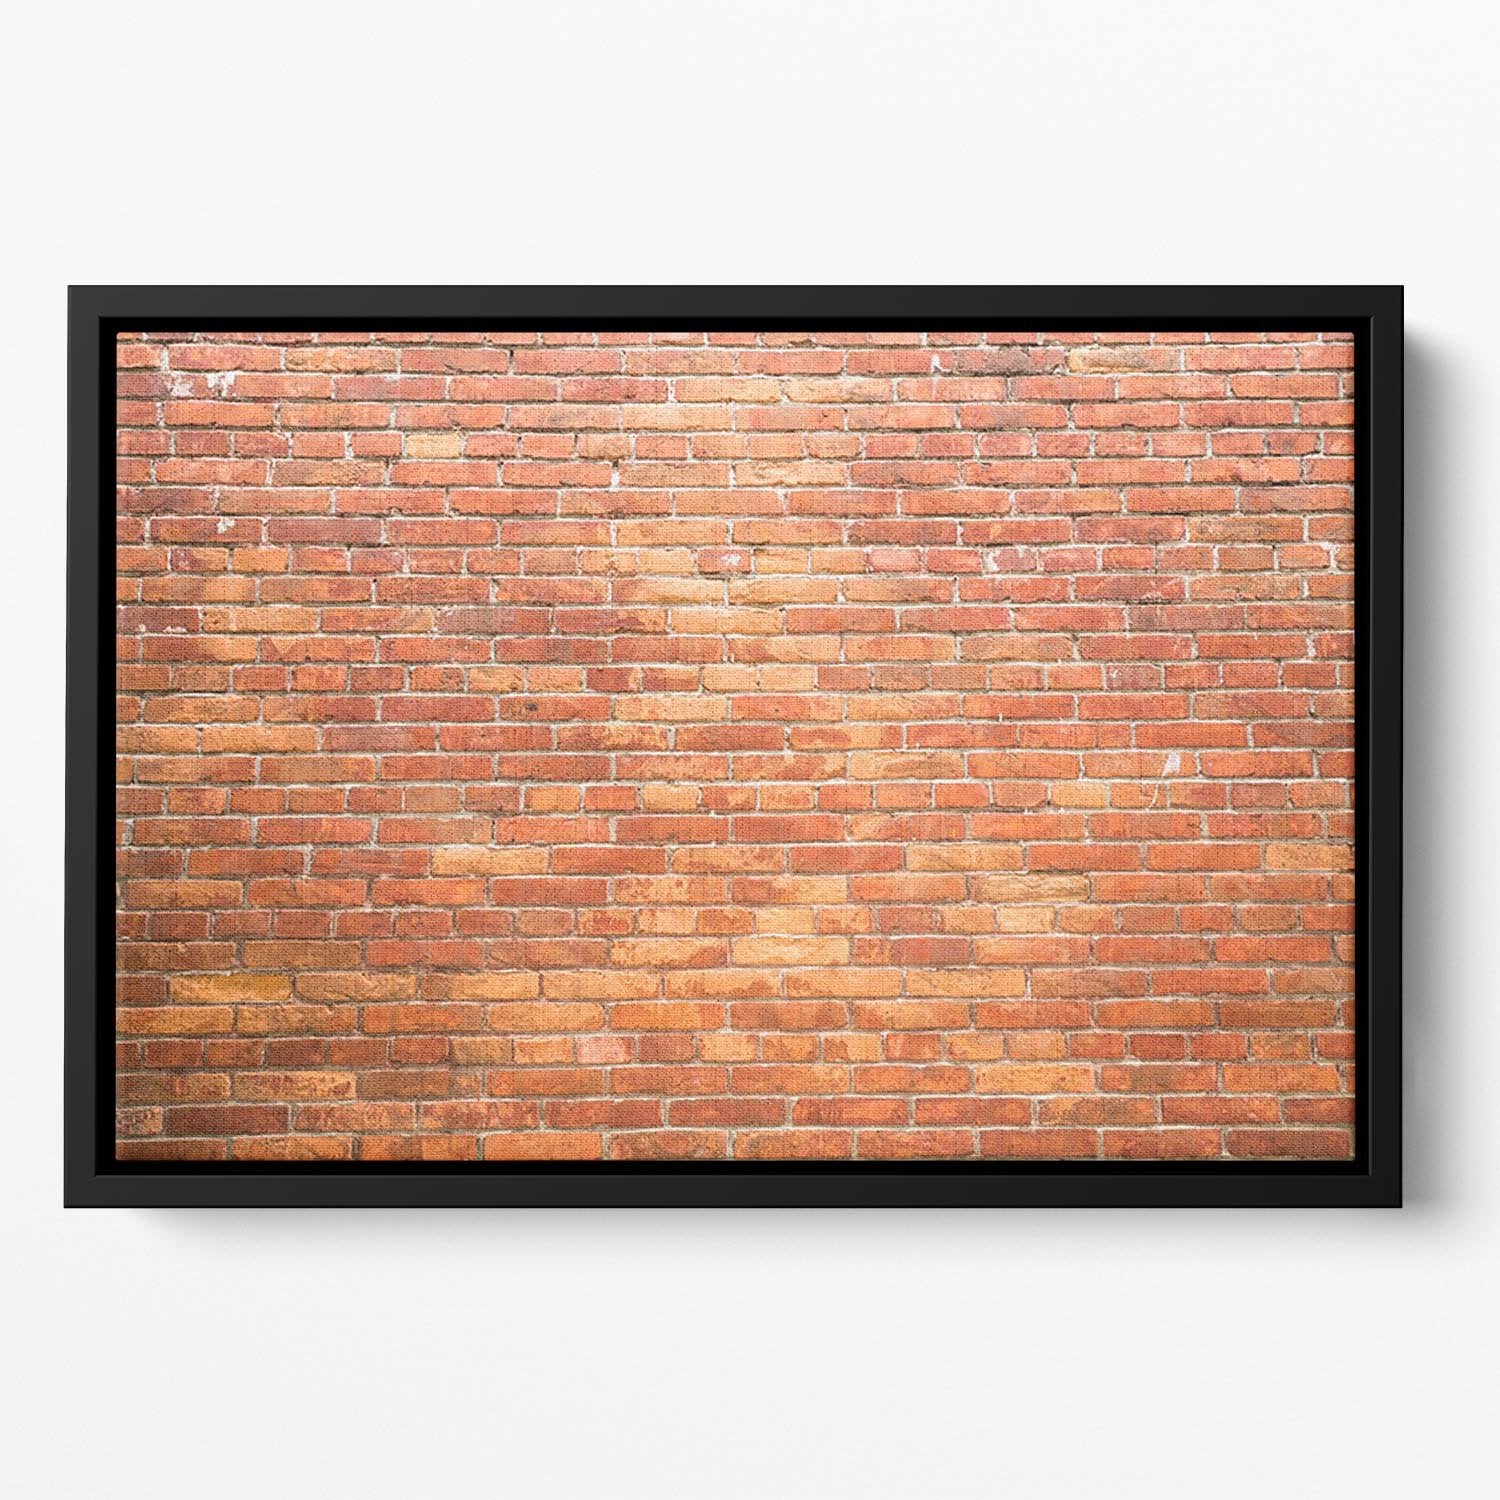 Bricks wall Floating Framed Canvas - Canvas Art Rocks - 2